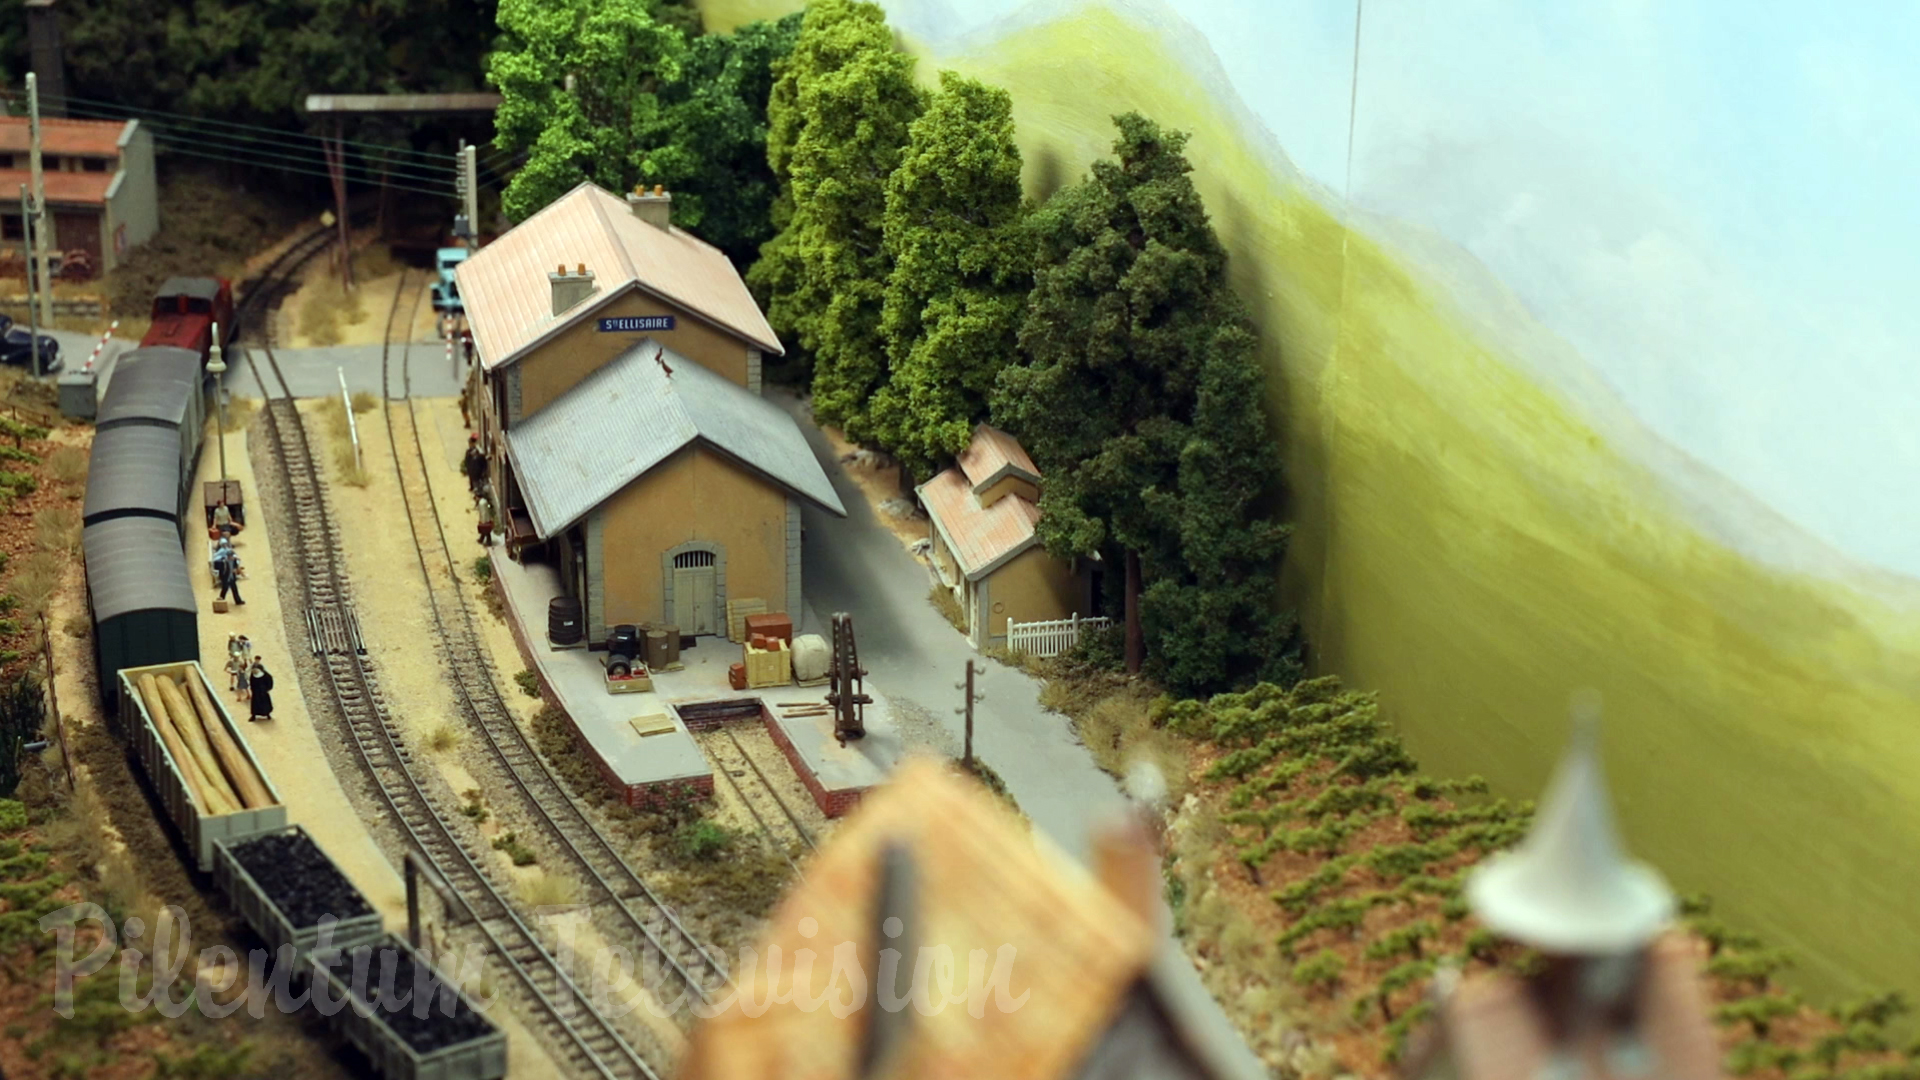 Beautiful French Model Railway Diorama in Narrow Gauge Sainte Ellisaire by Jaco Vroom